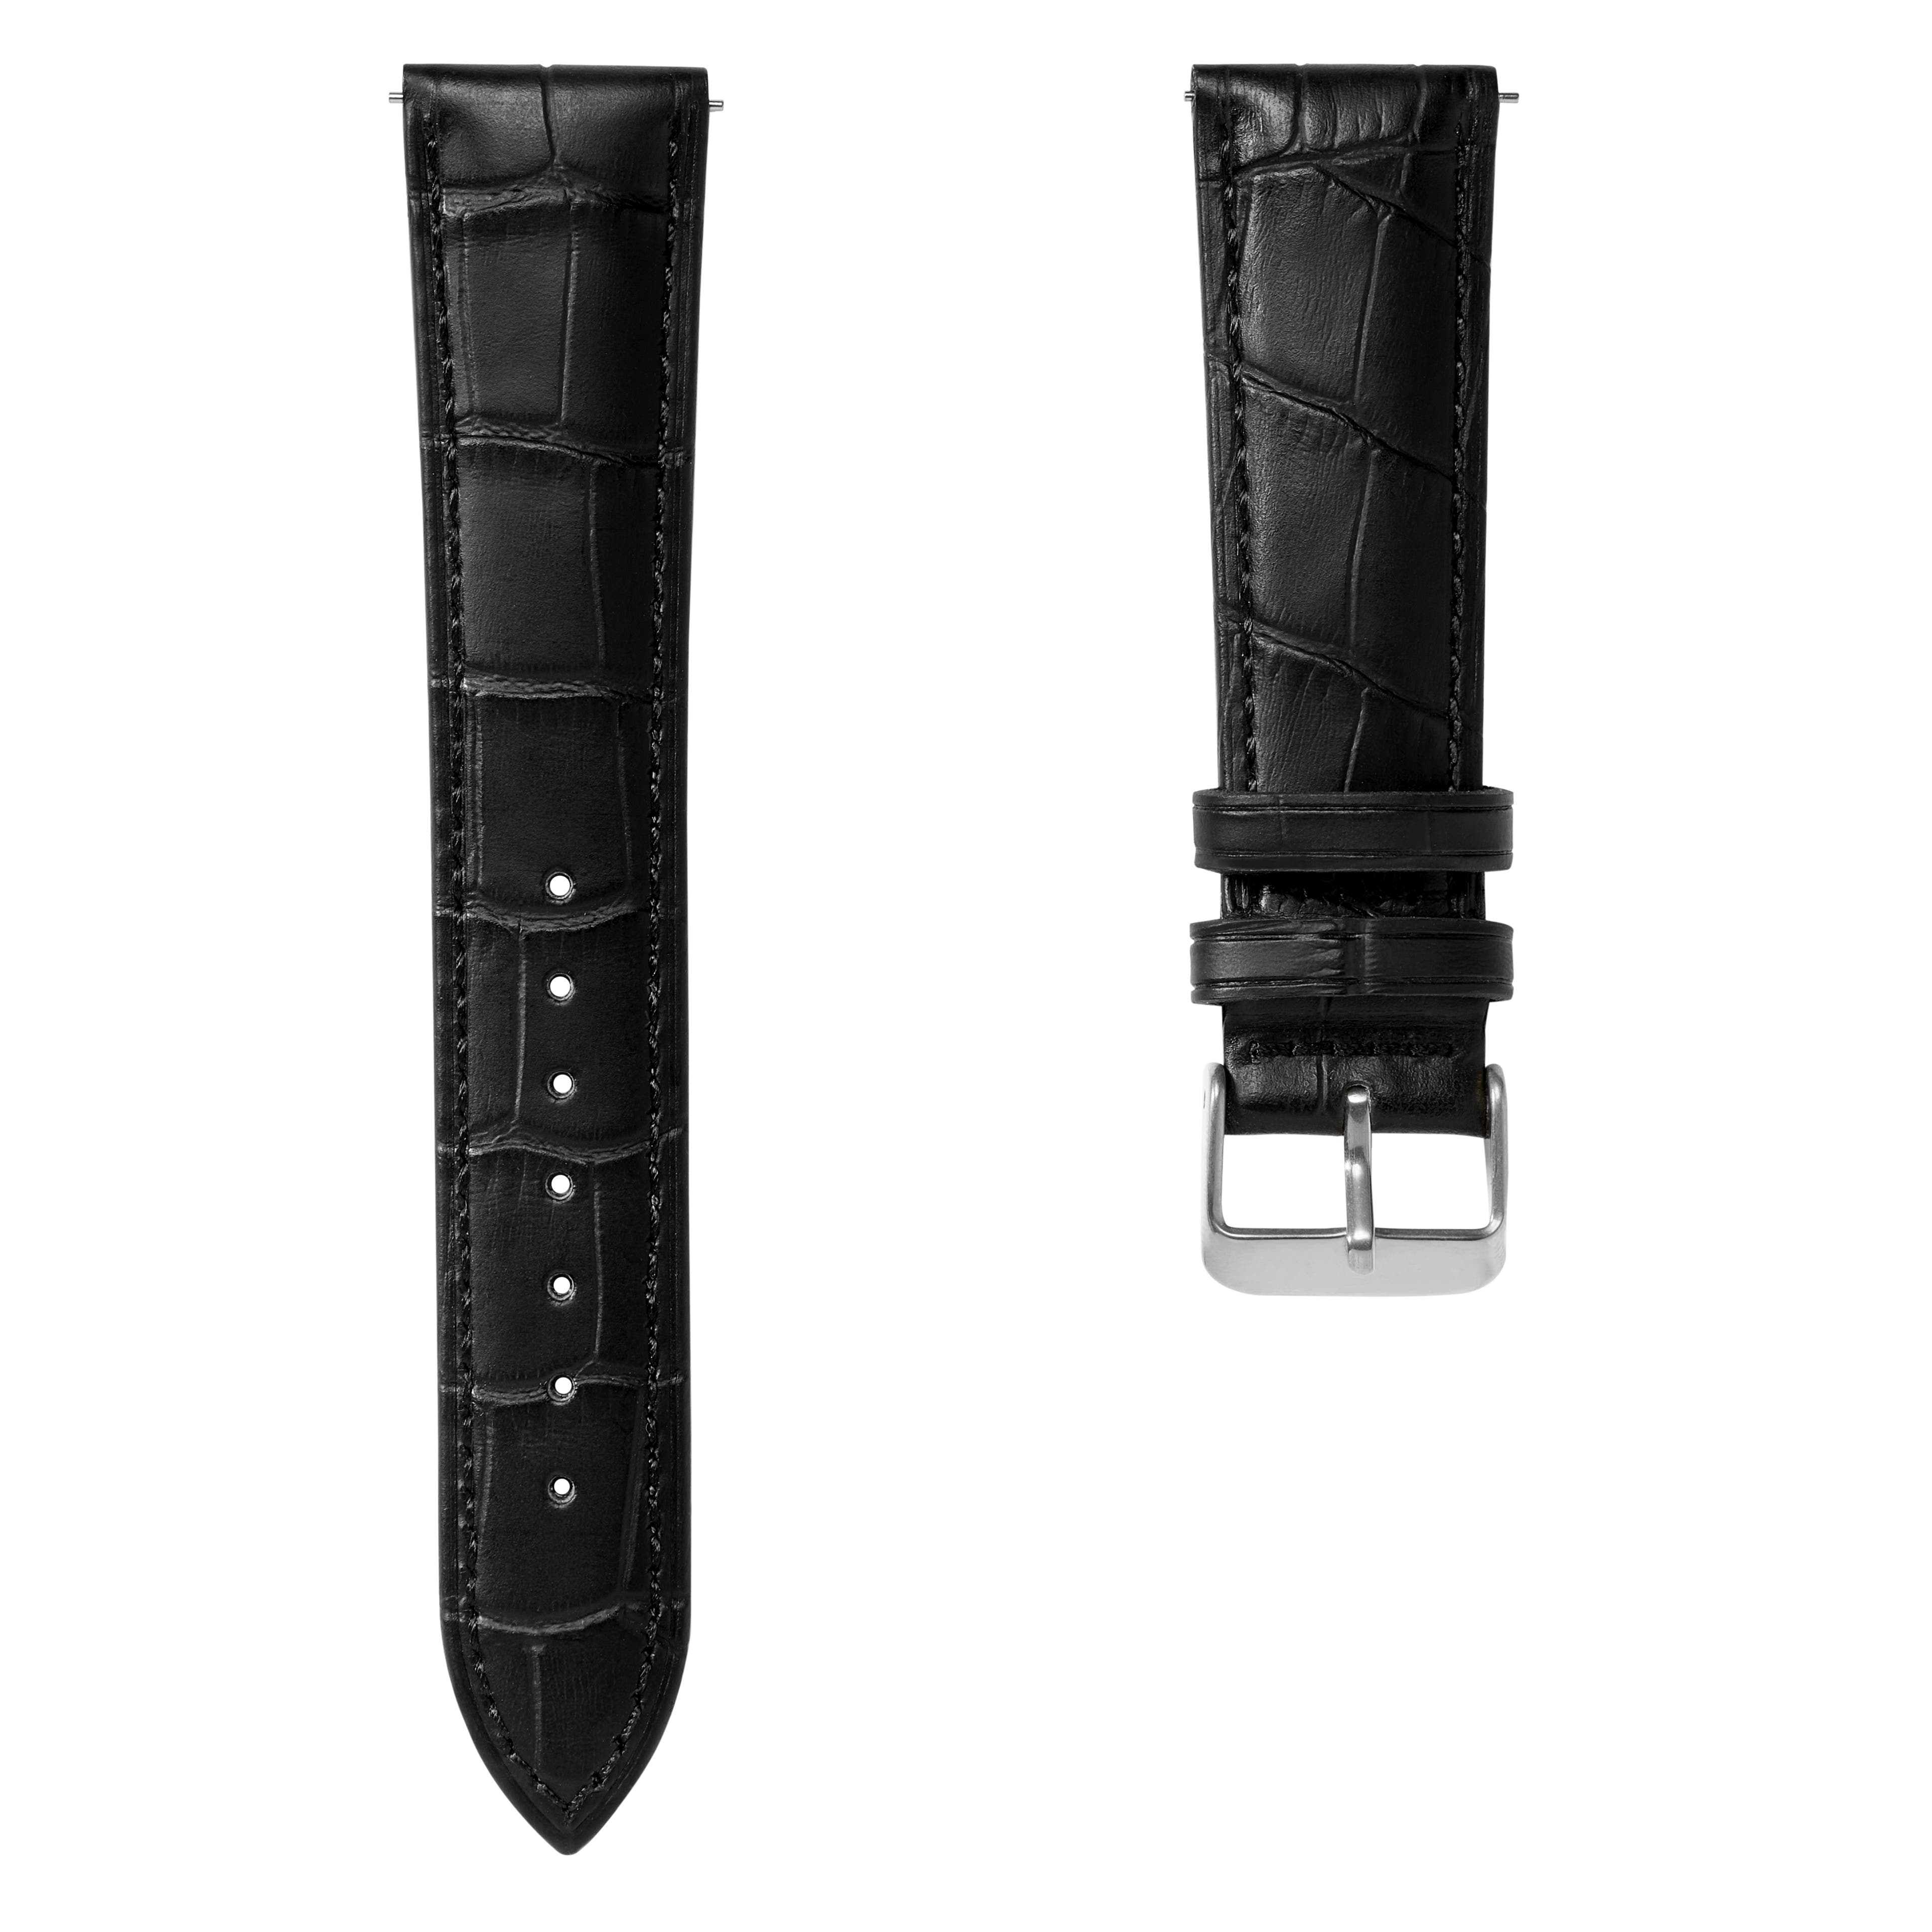 18mm černý kožený řemínek na hodinky s krokodýlím vzorem se sponou ve stříbrné barvě - rychlé odepnutí